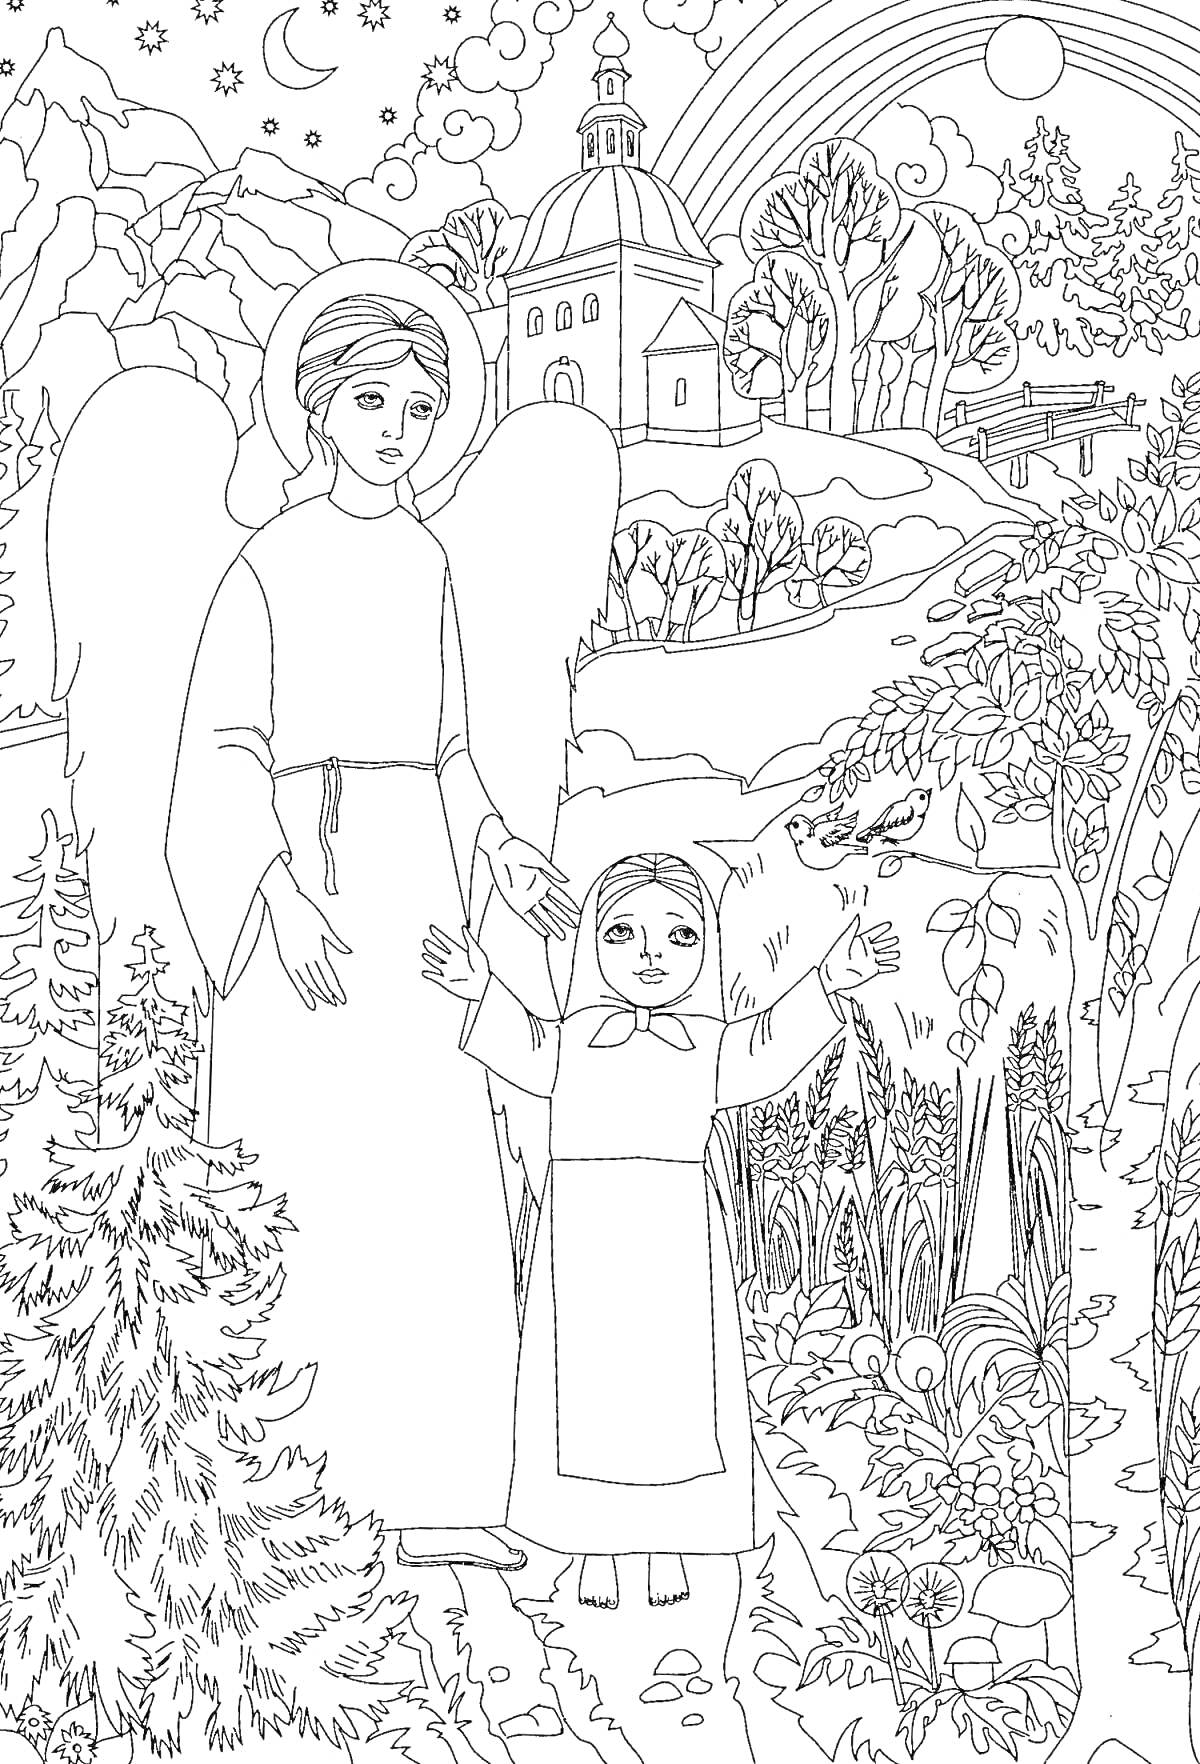 РаскраскаАнгел и ребенок рядом с церковью в природе